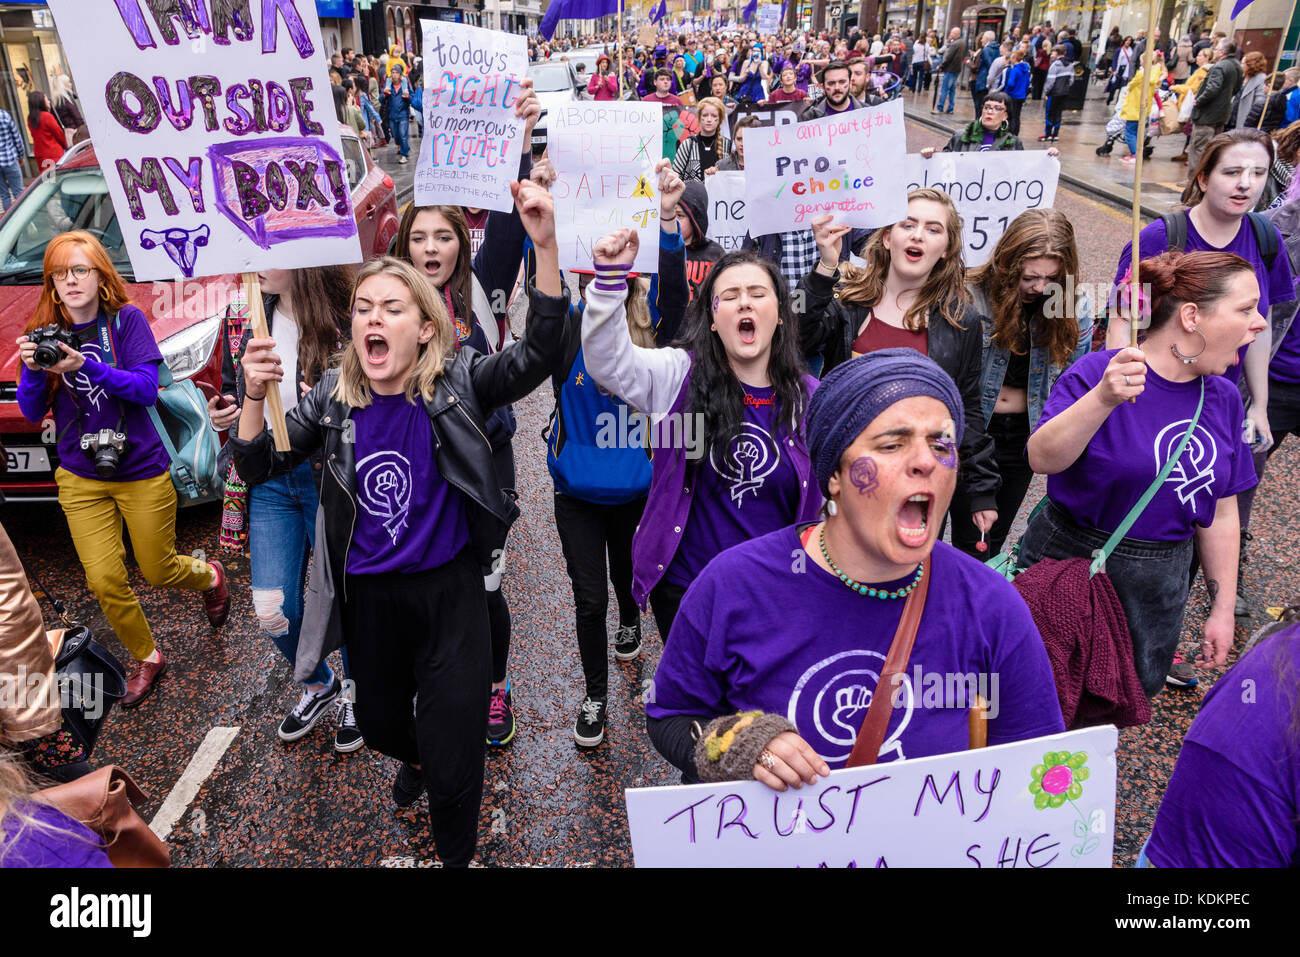 Belfast, Nordirland. 14/10/2017 - Rallye für Wahl halten eine Parade zur Unterstützung der pro-reproduktive Wahl Recht auf Abtreibung und die Rechte der Frauen. Rund 1200 Menschen nahmen an der Veranstaltung teil. Stockfoto